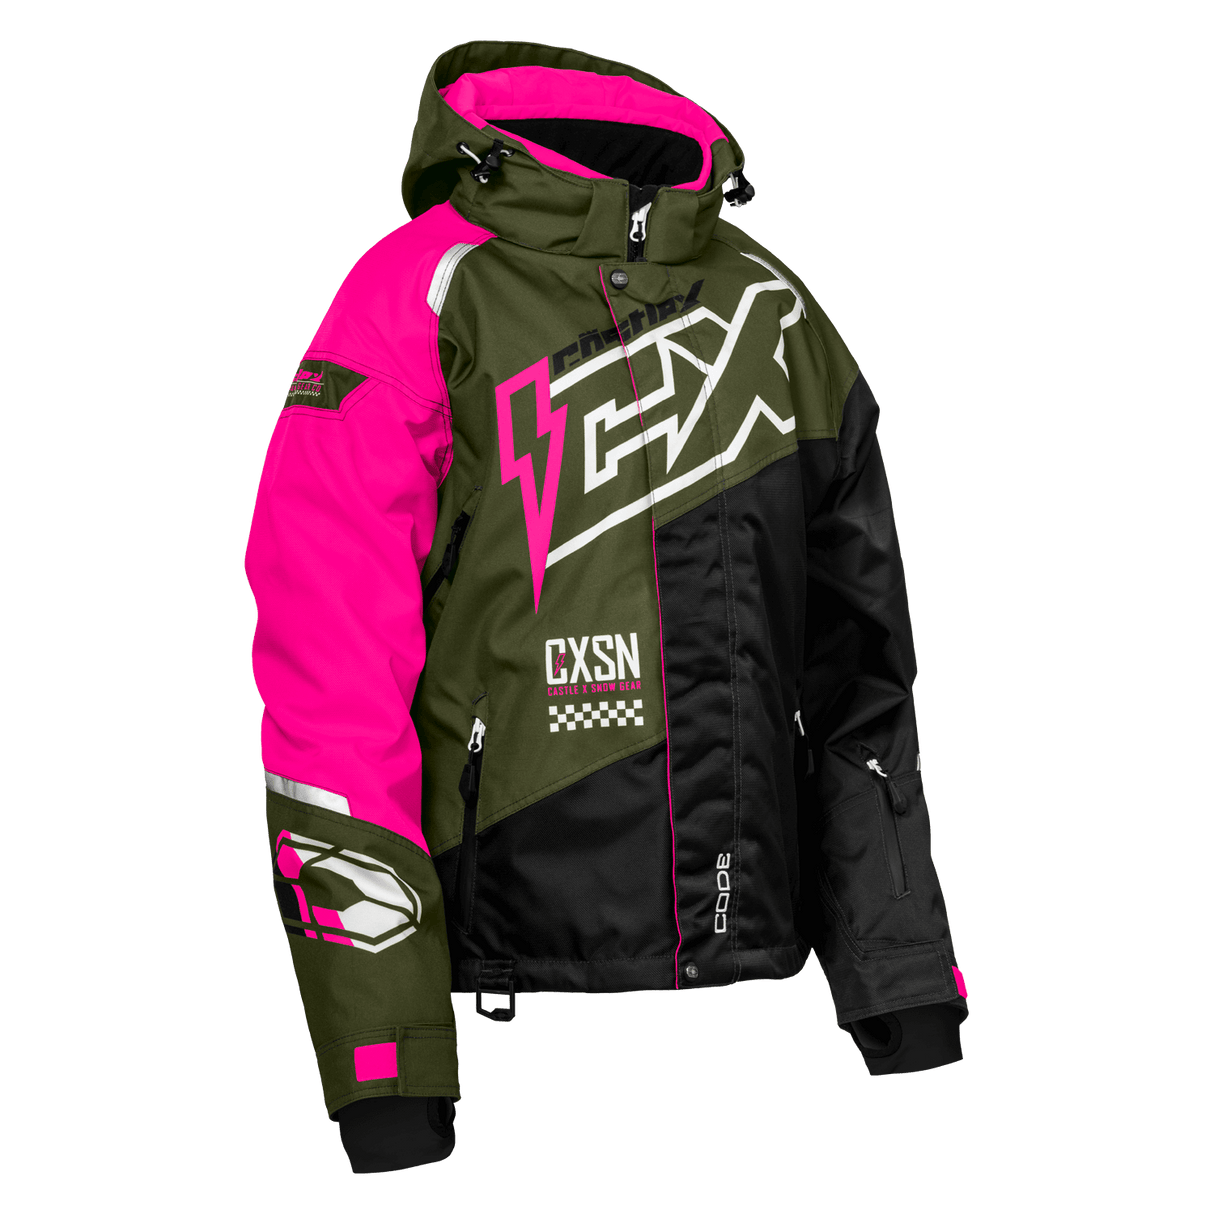 Castle X Women's Code G5 Jacket